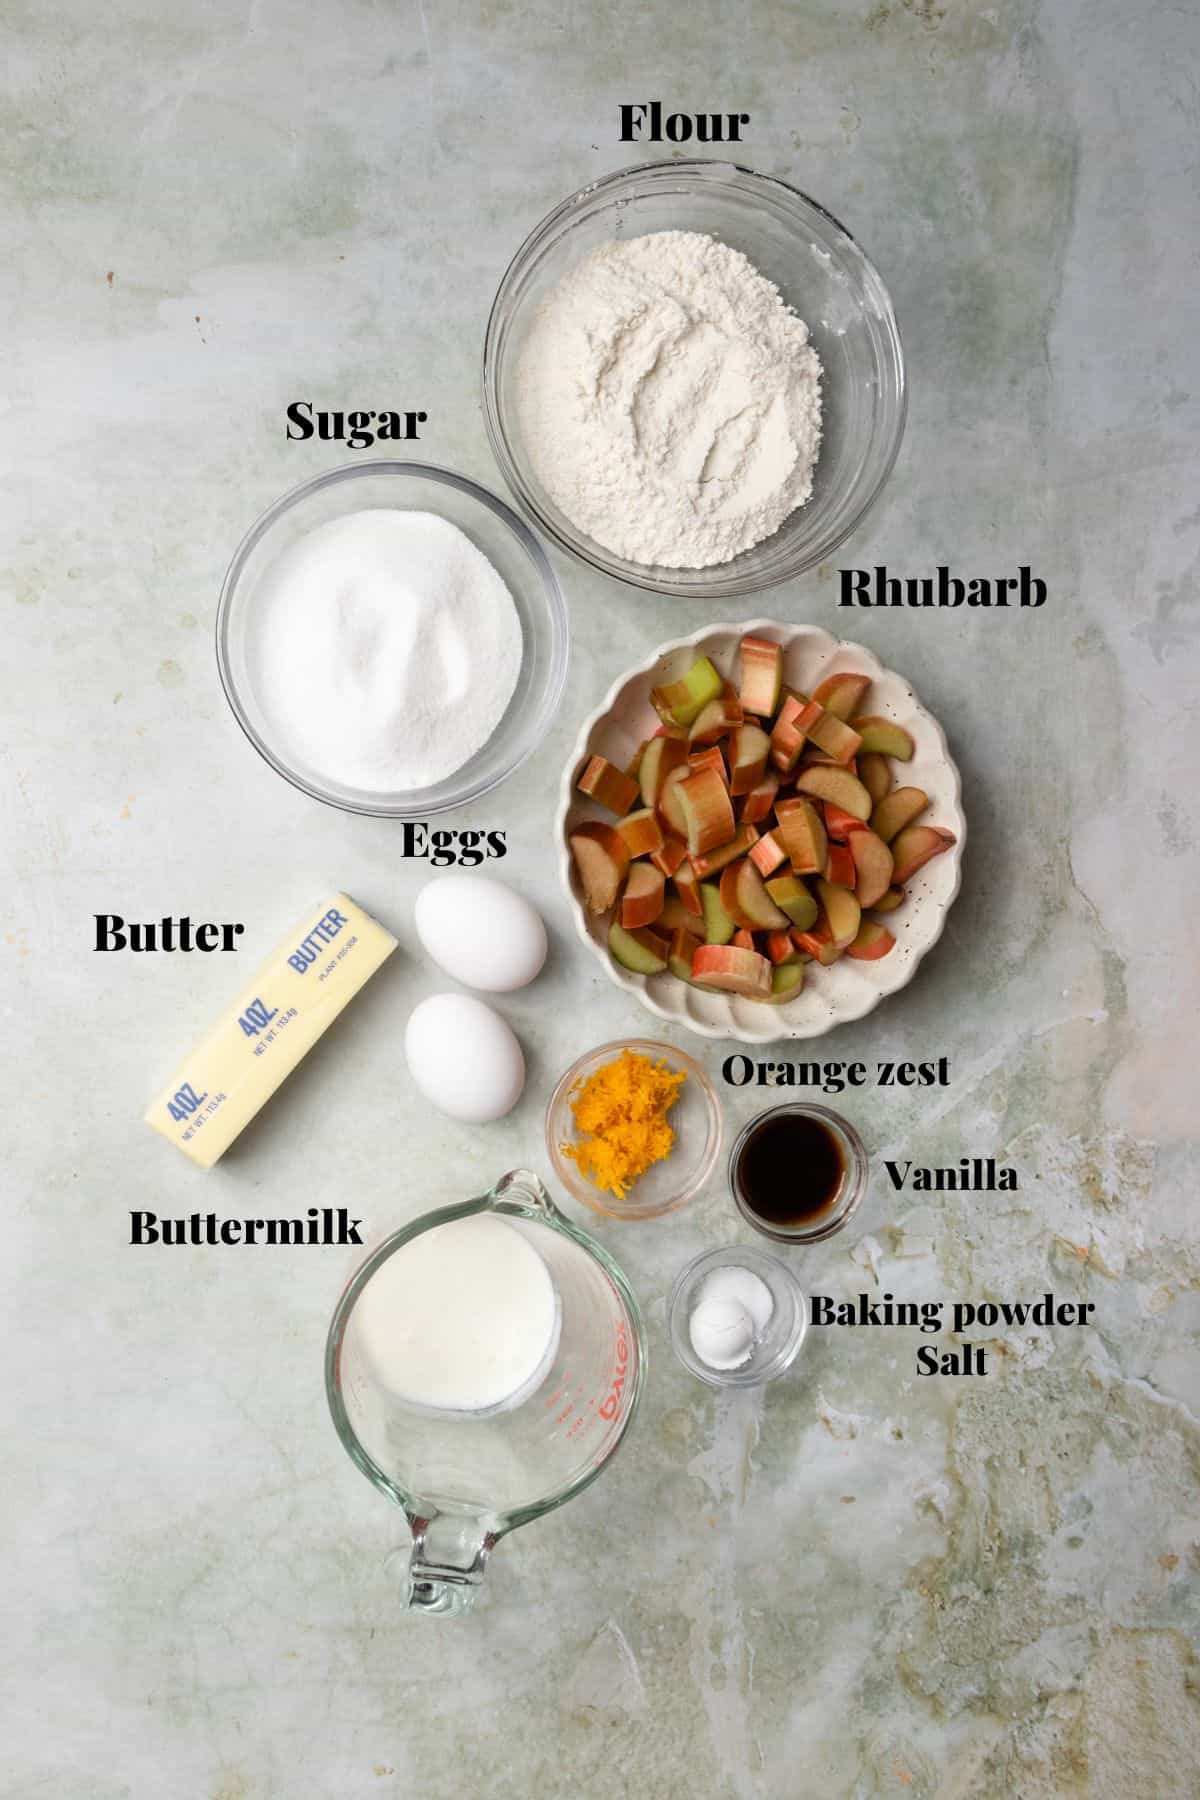 Ingredients to make rhubarb cake.